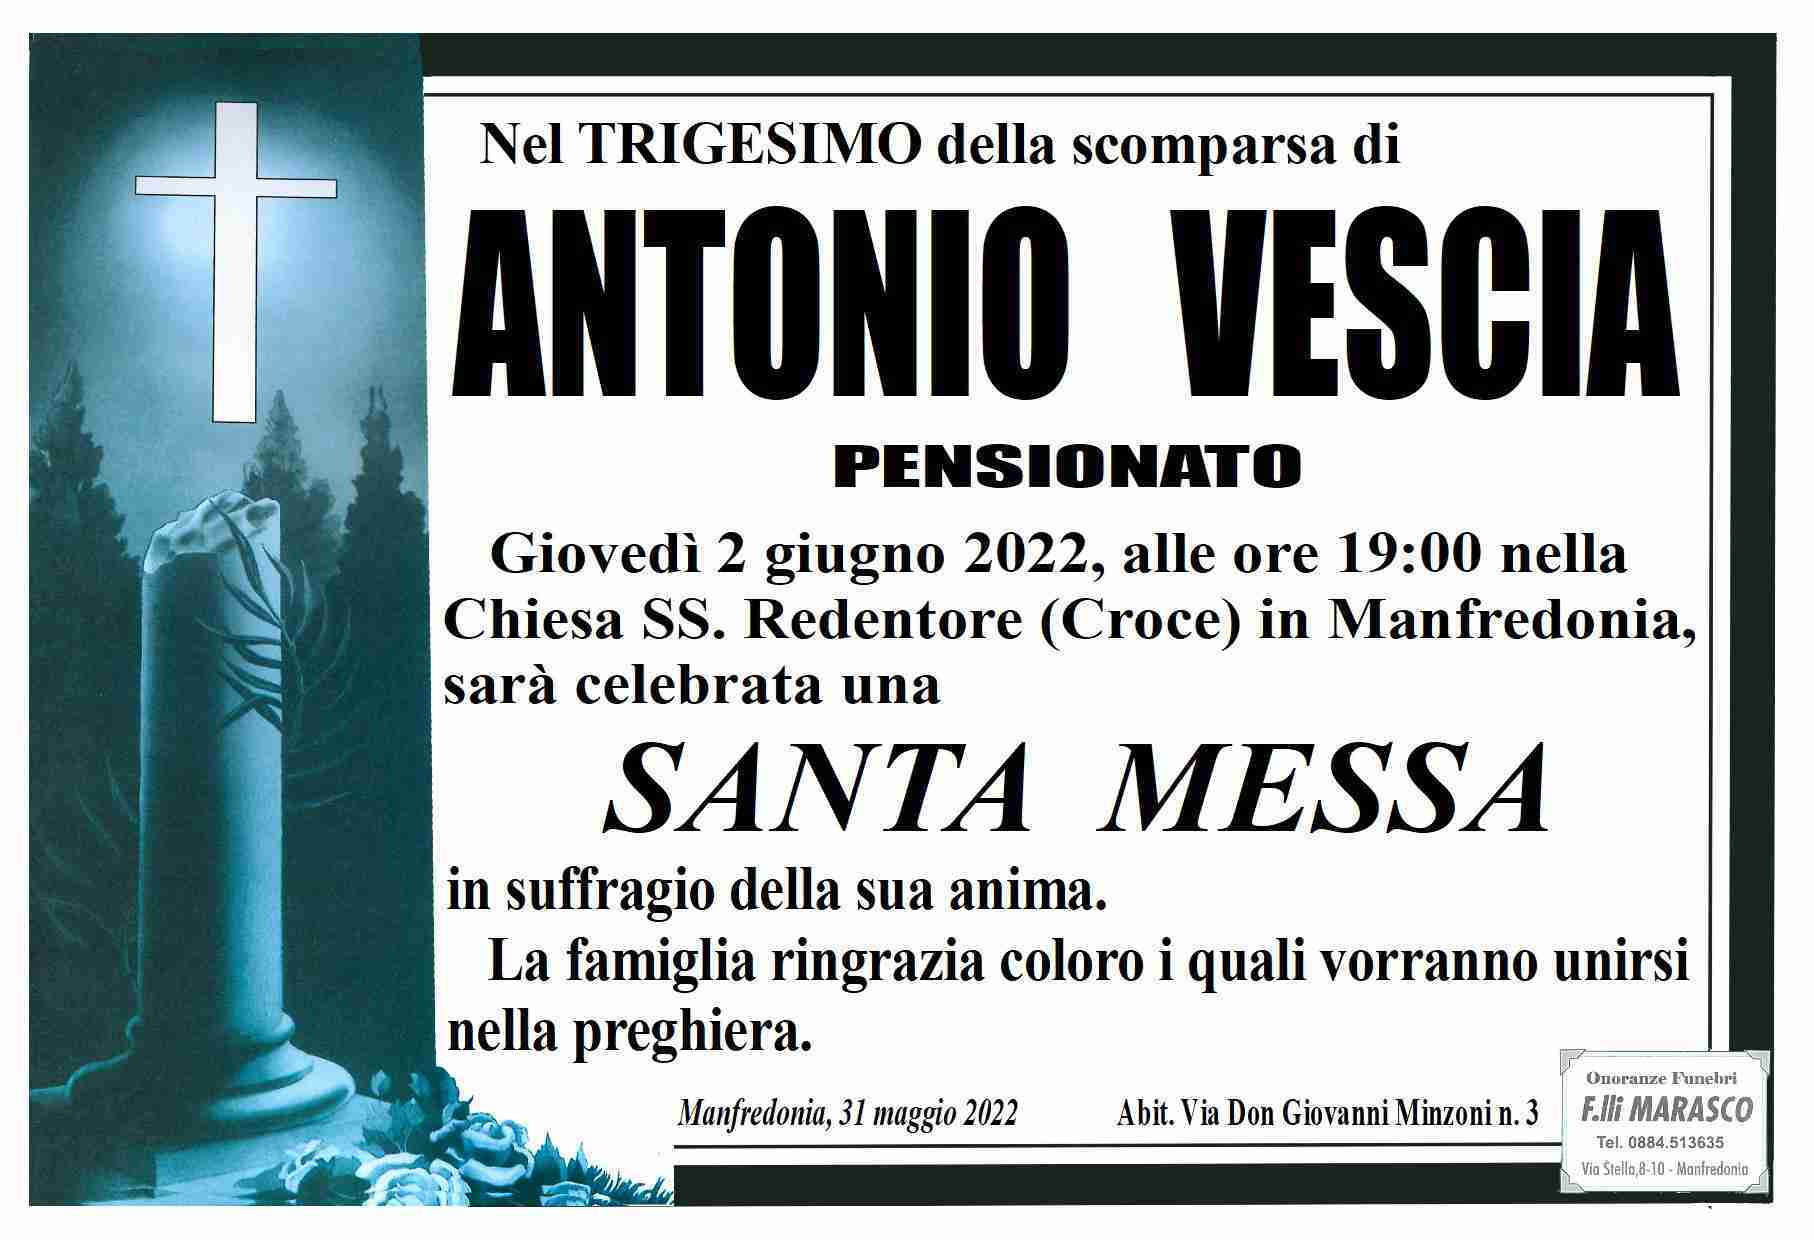 Antonio Vescia